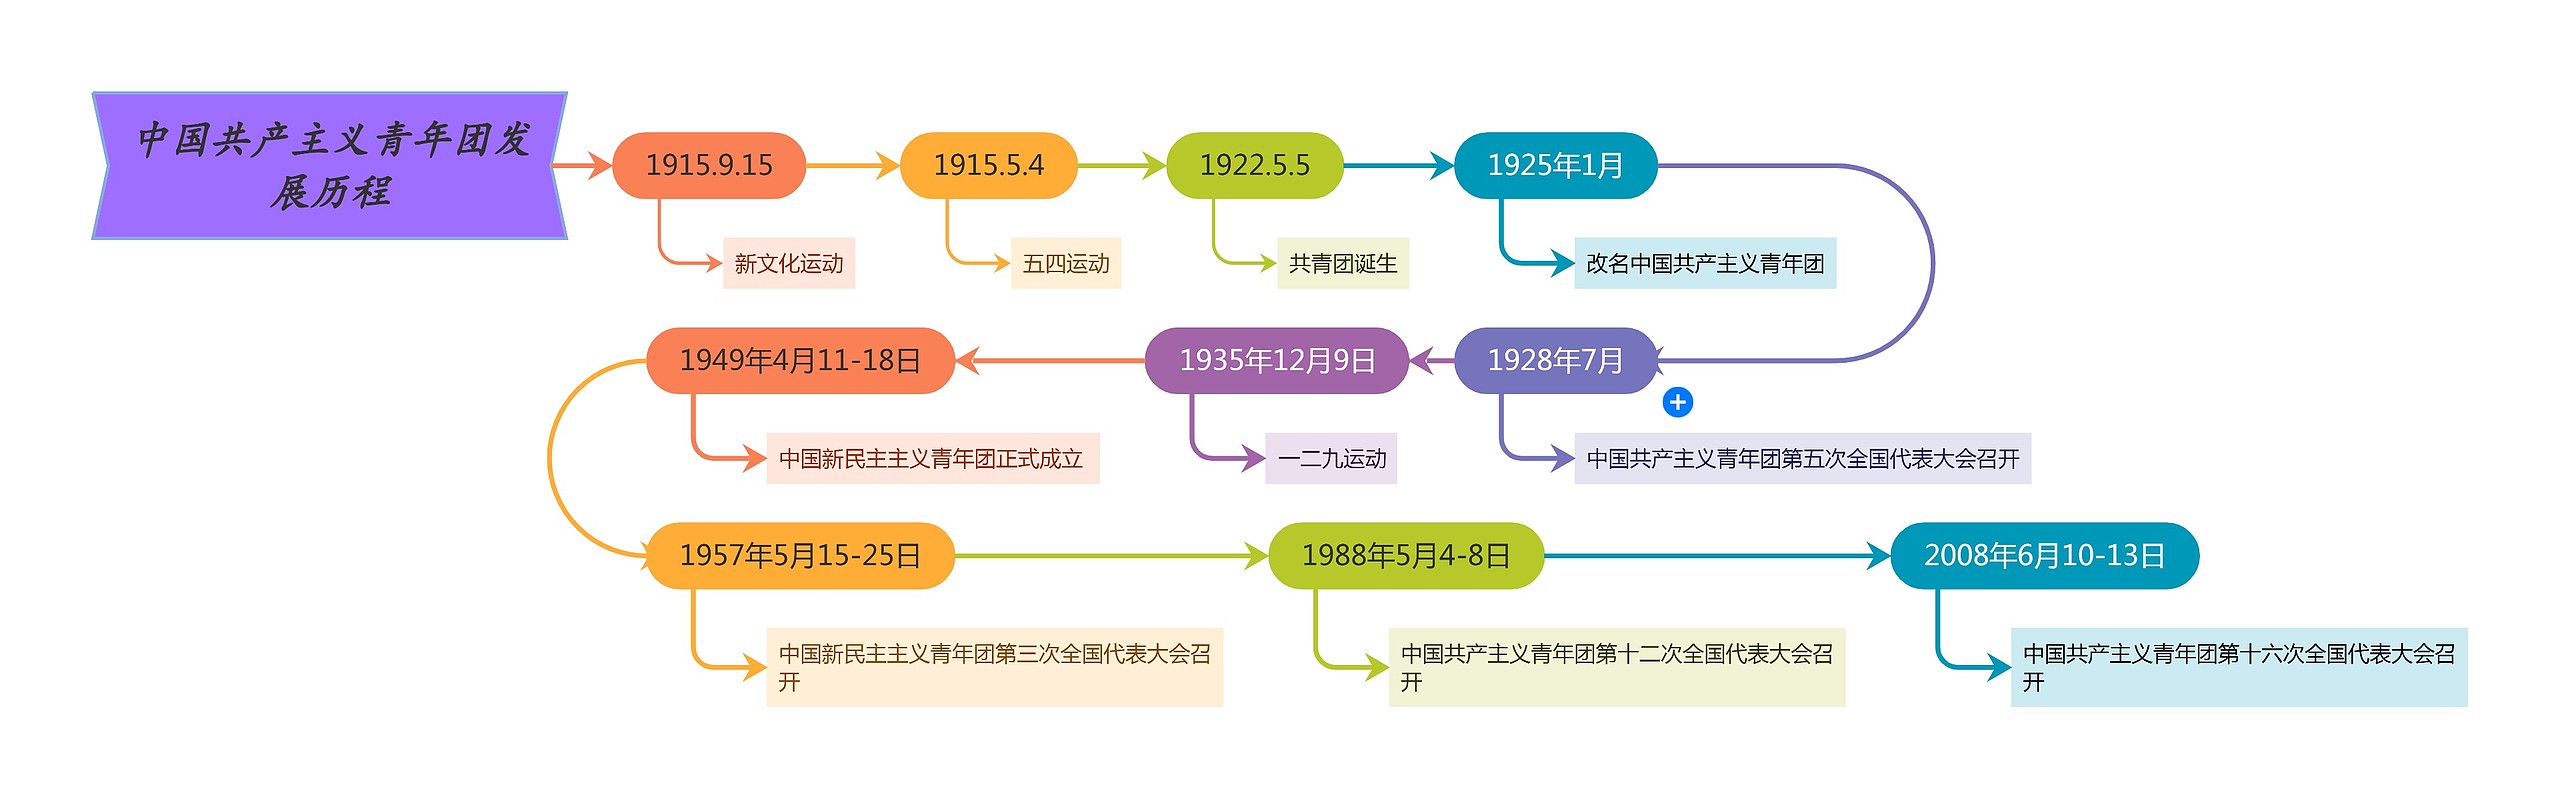 中国共产主义青年团发展历程时间线